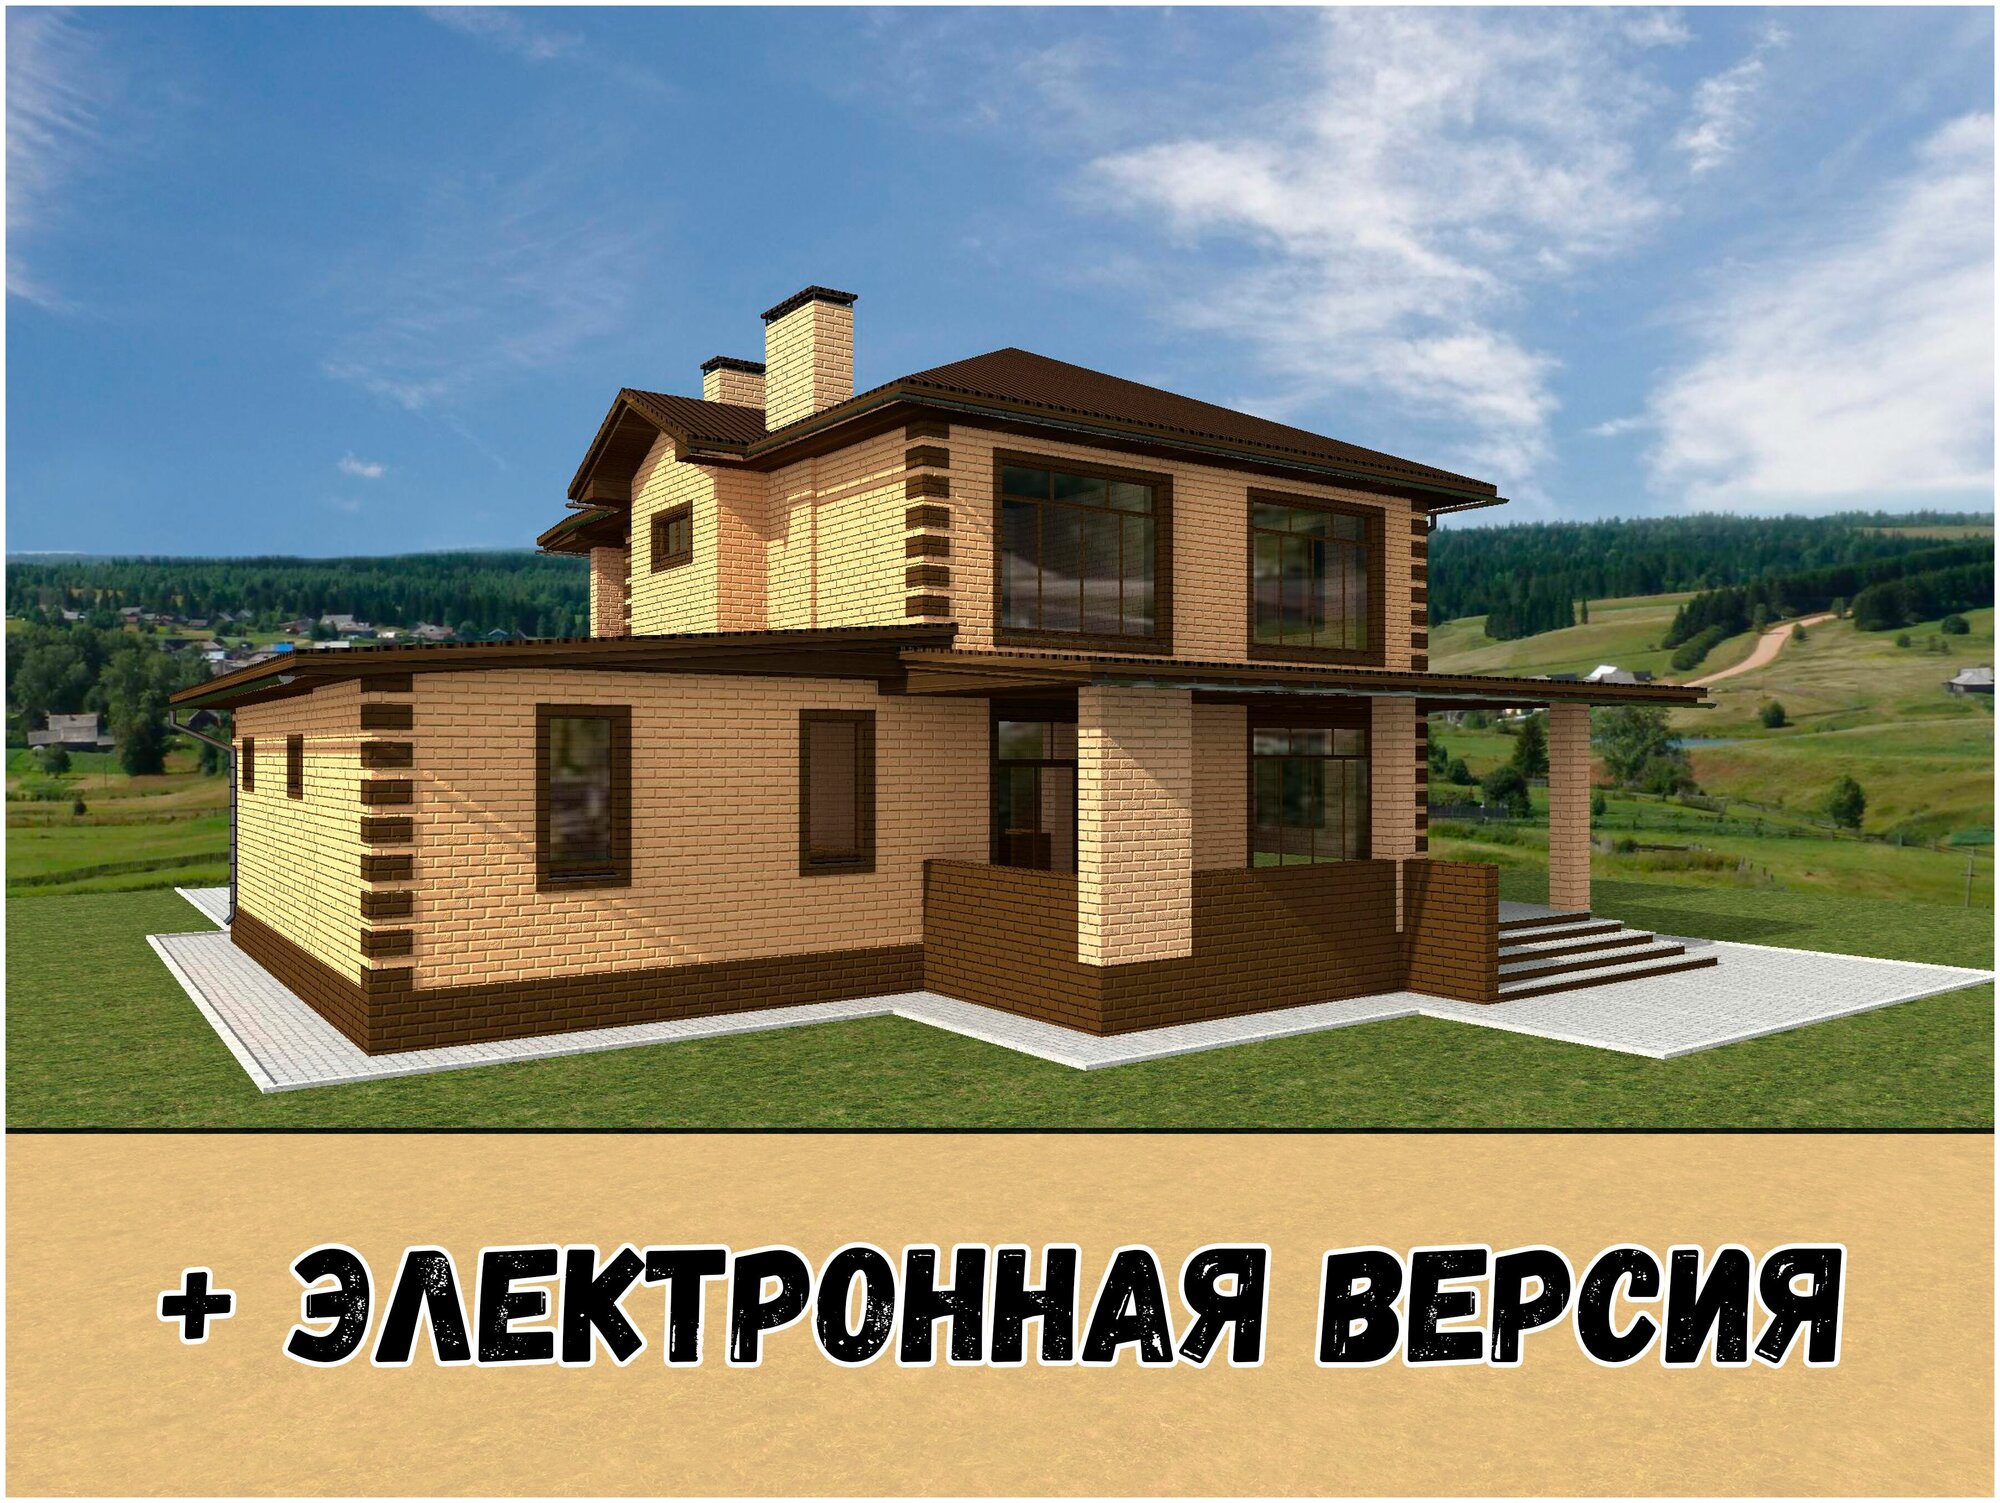 Готовый проект двухэтажного дома с гаражом из керамического блока с облицовкой из керамического облицовочного кирпича площадью 273,6 кв. м